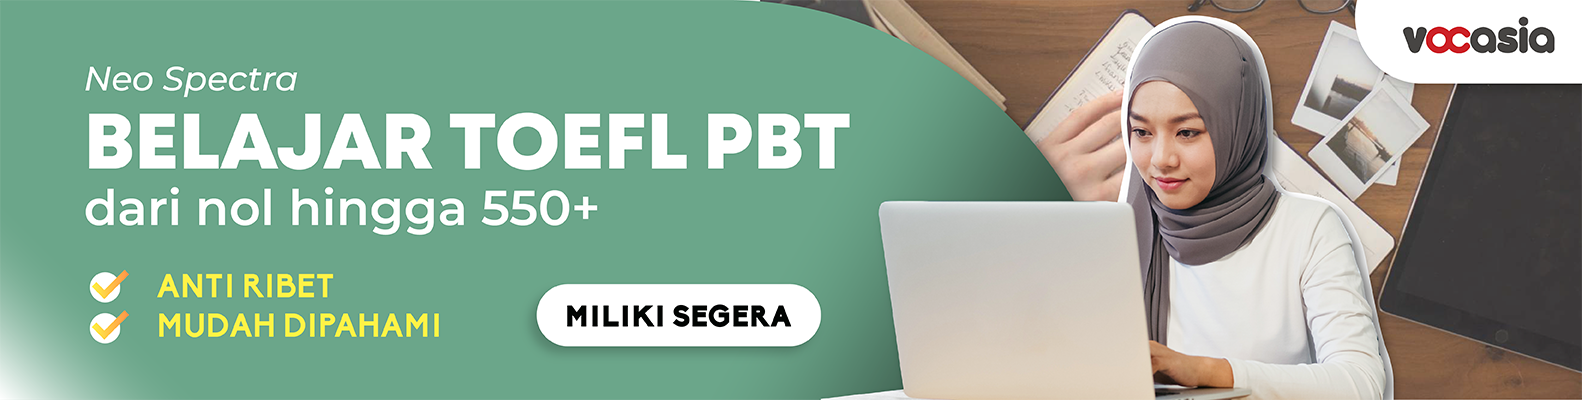 Kursus online belajar TOEFL PBT Vocasia